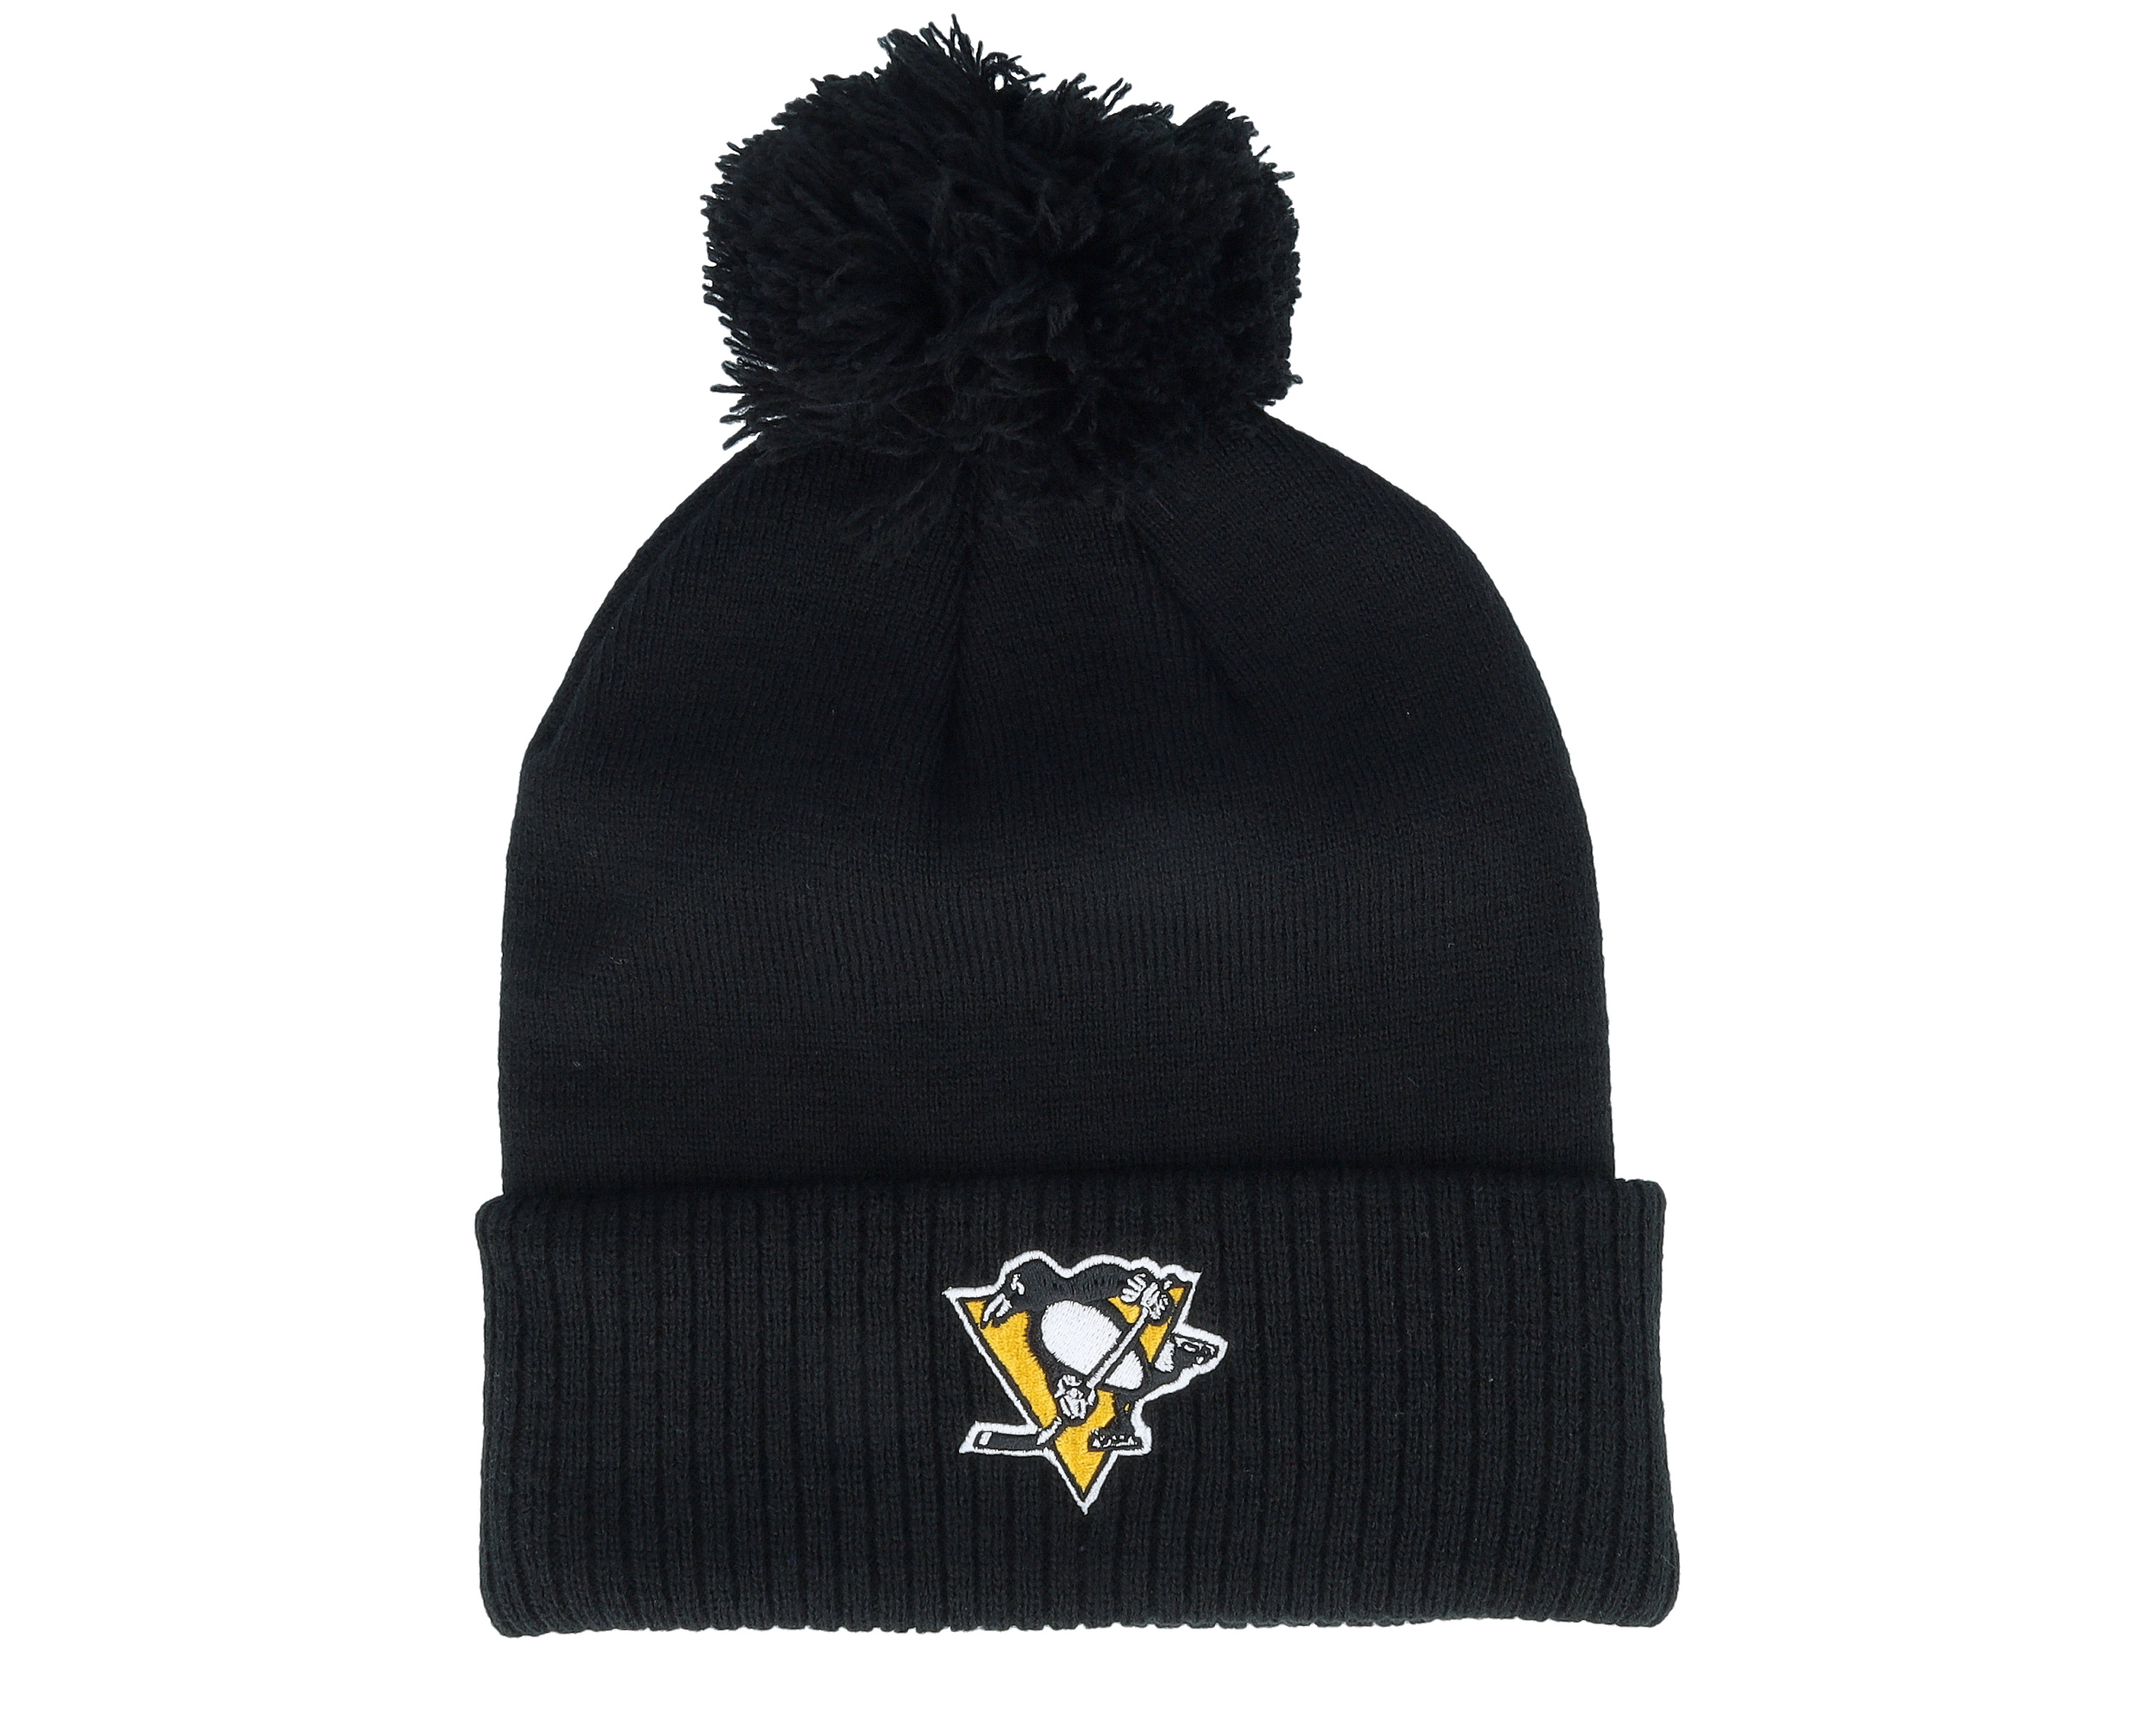 Pittsburgh Penguins NHL adidas Unisex Black Meshback Hat